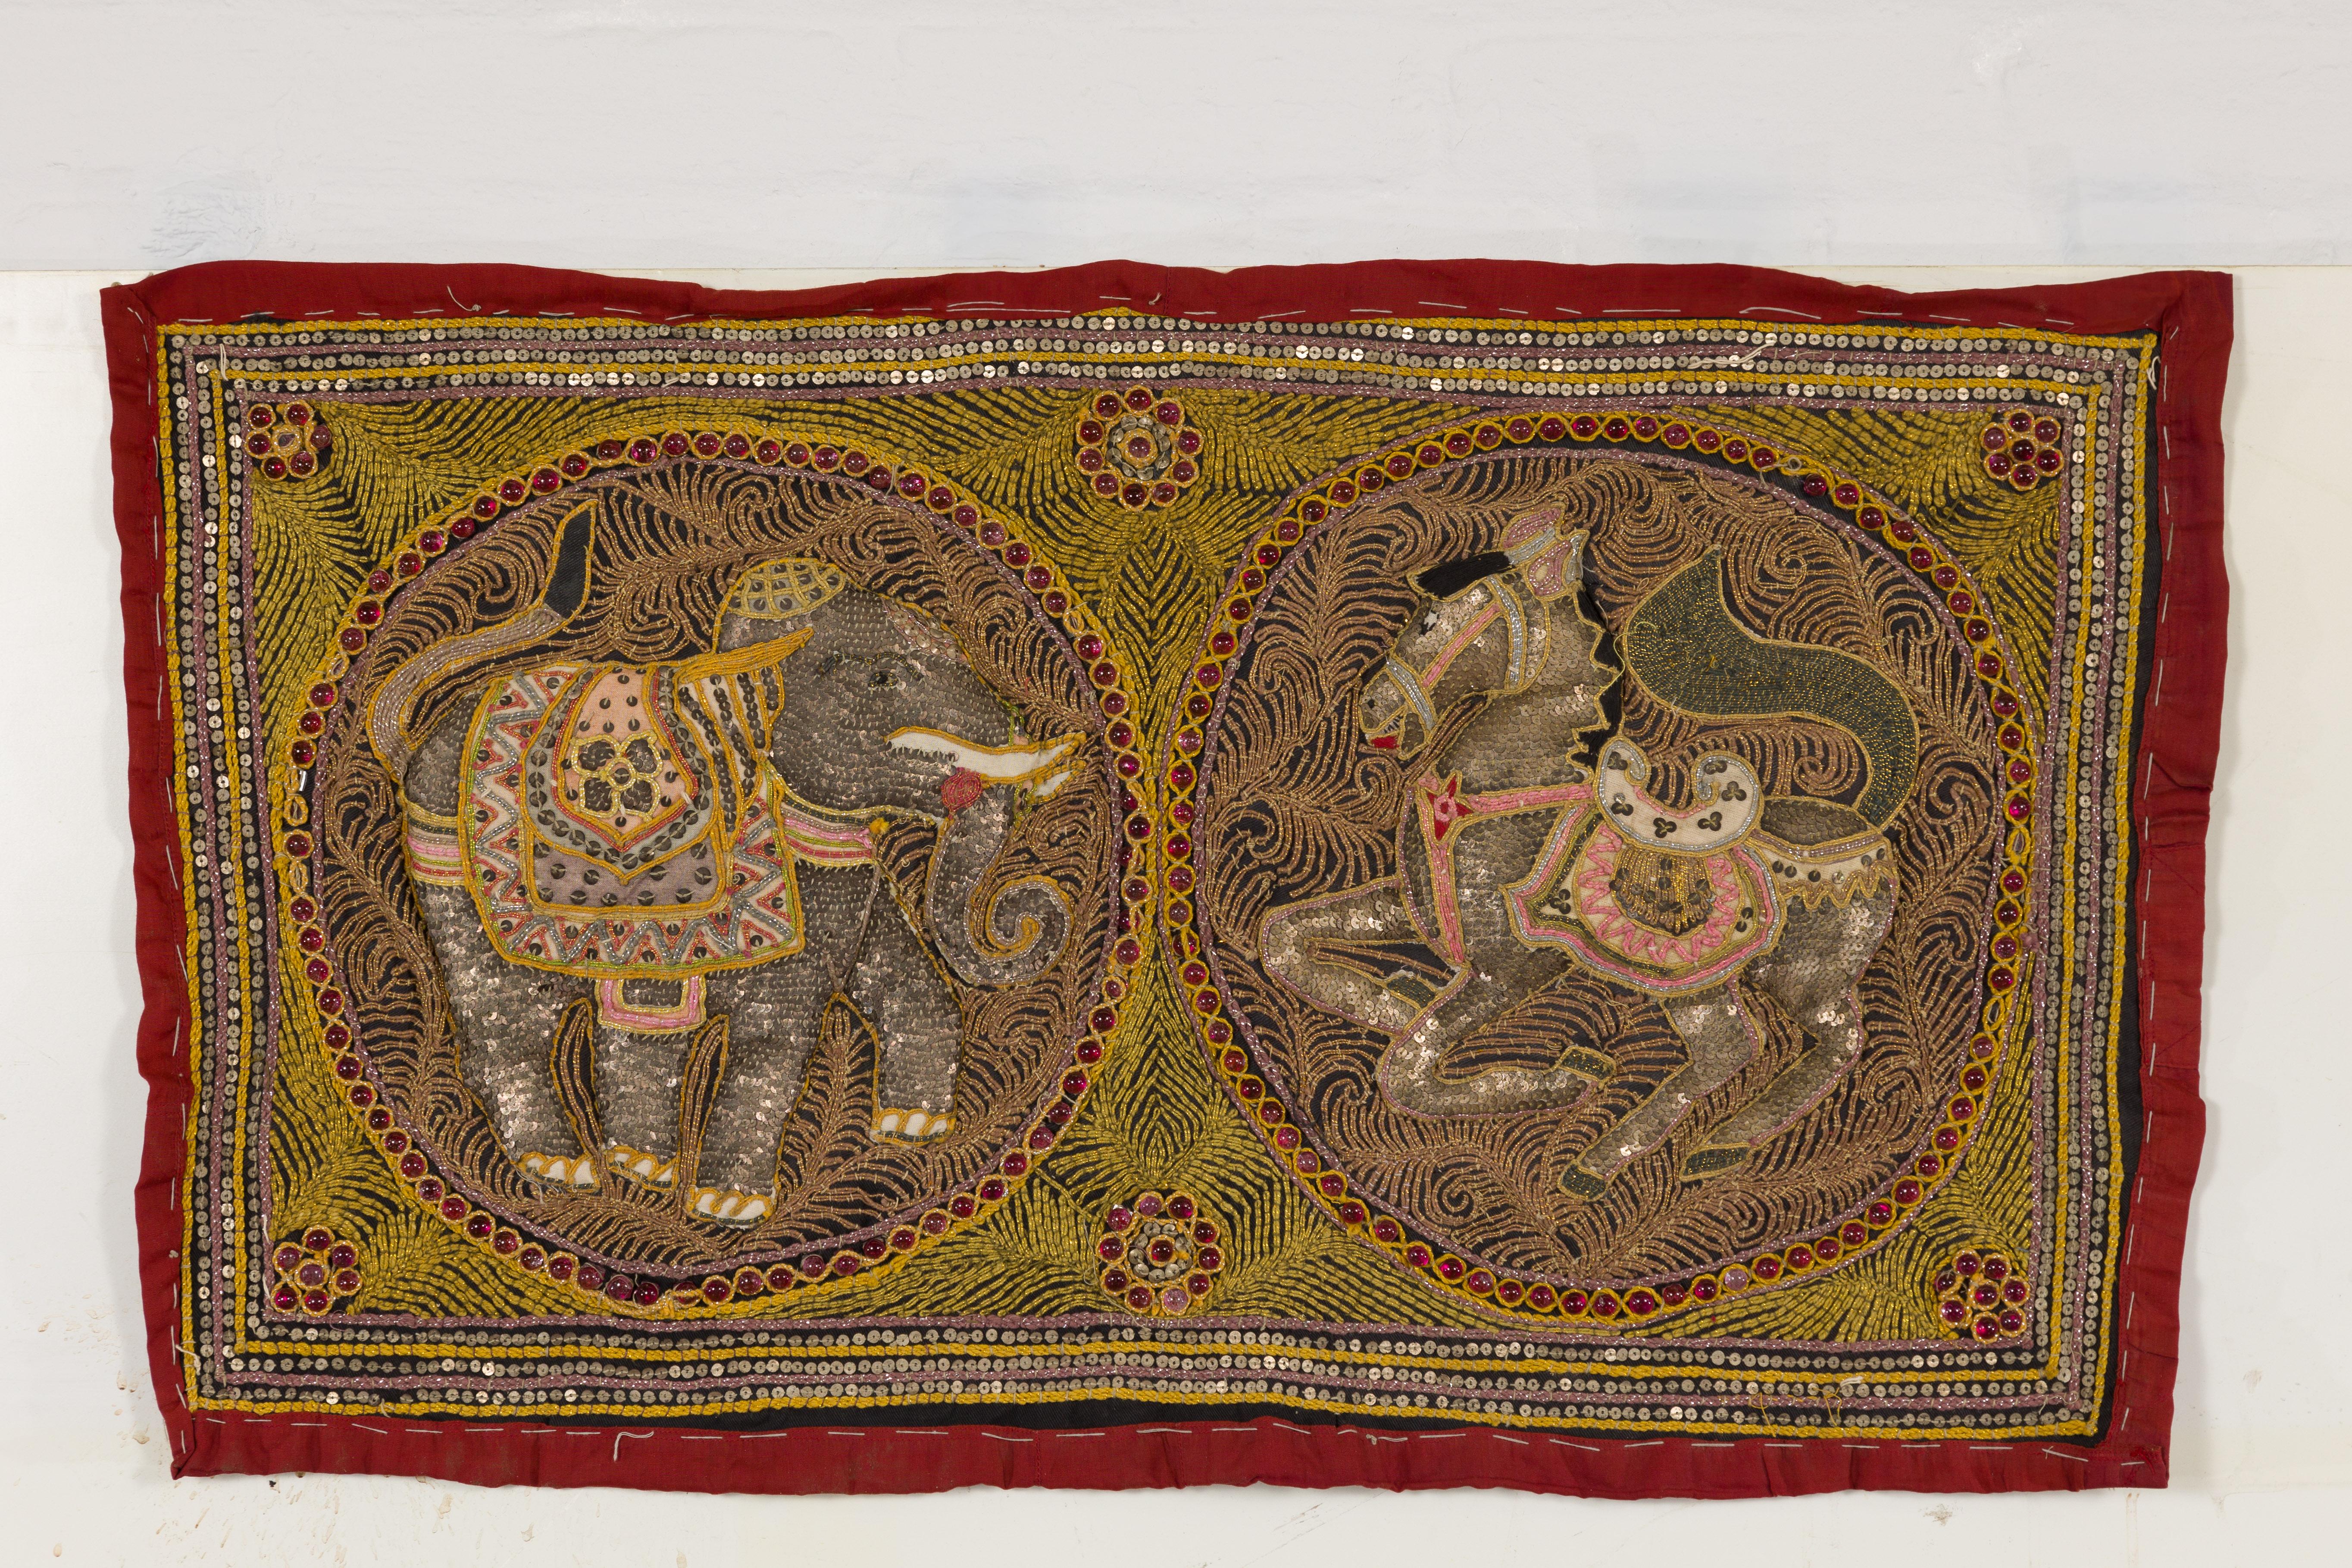 Ein bestickter Wandteppich aus Kalaga aus dem 19. Jahrhundert, der ein Pferd und einen Elefanten darstellt, mit goldenen und rosafarbenen Fäden, silberfarbenen Pailletten und zierlichen roten Perlen. Tauchen Sie ein in die reiche kulturelle Vielfalt